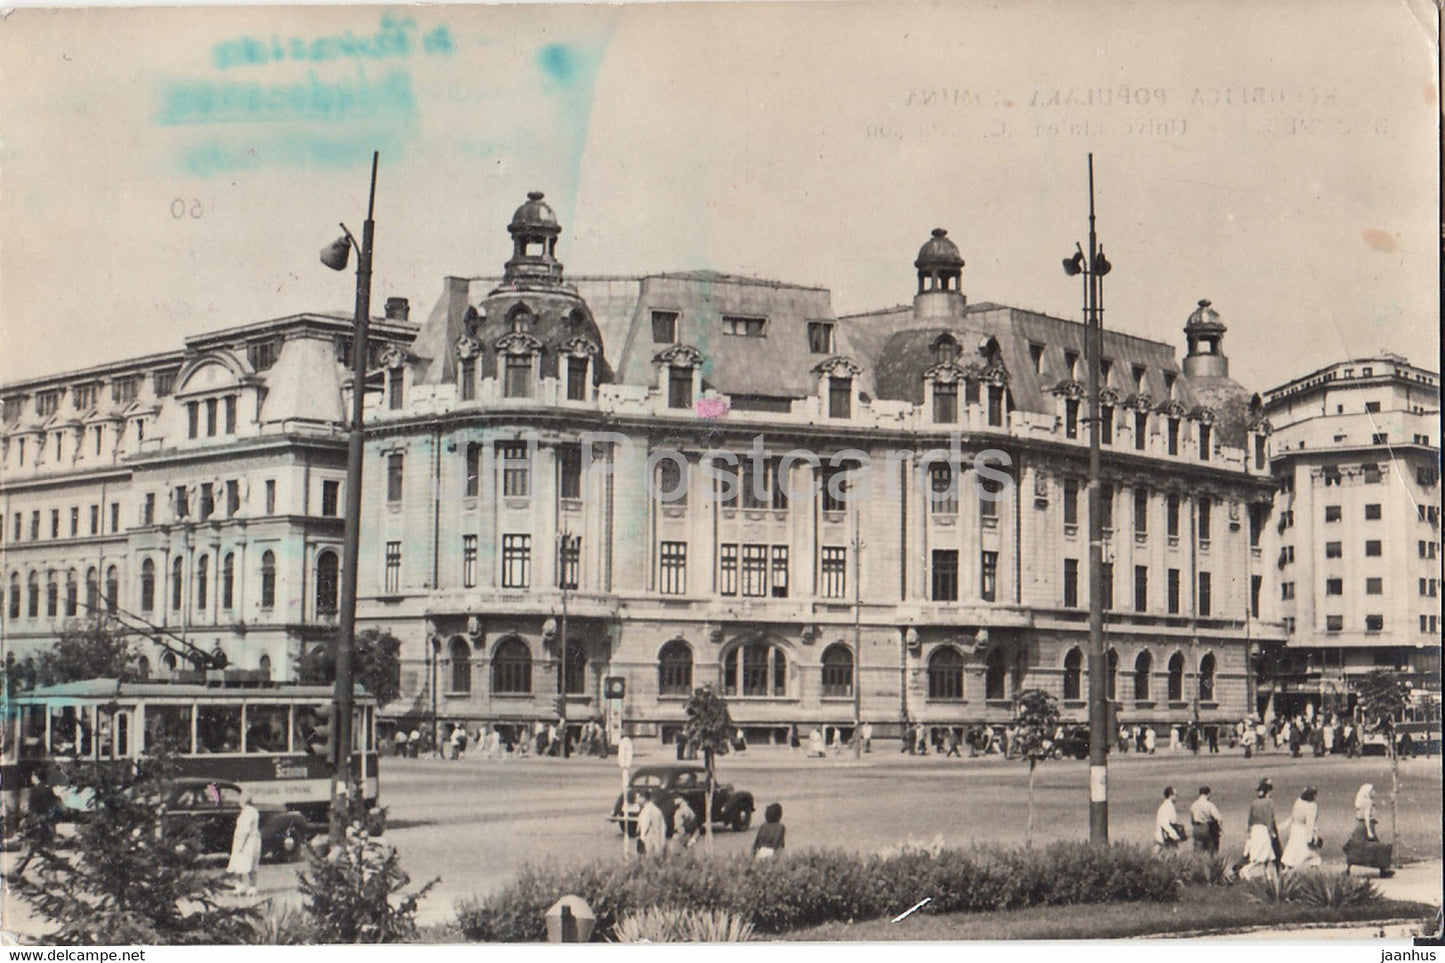 Bucharest - Bucuresti - Universitatea C I Parhon - tram - university - old postcard - 1958 - Romania - used - JH Postcards